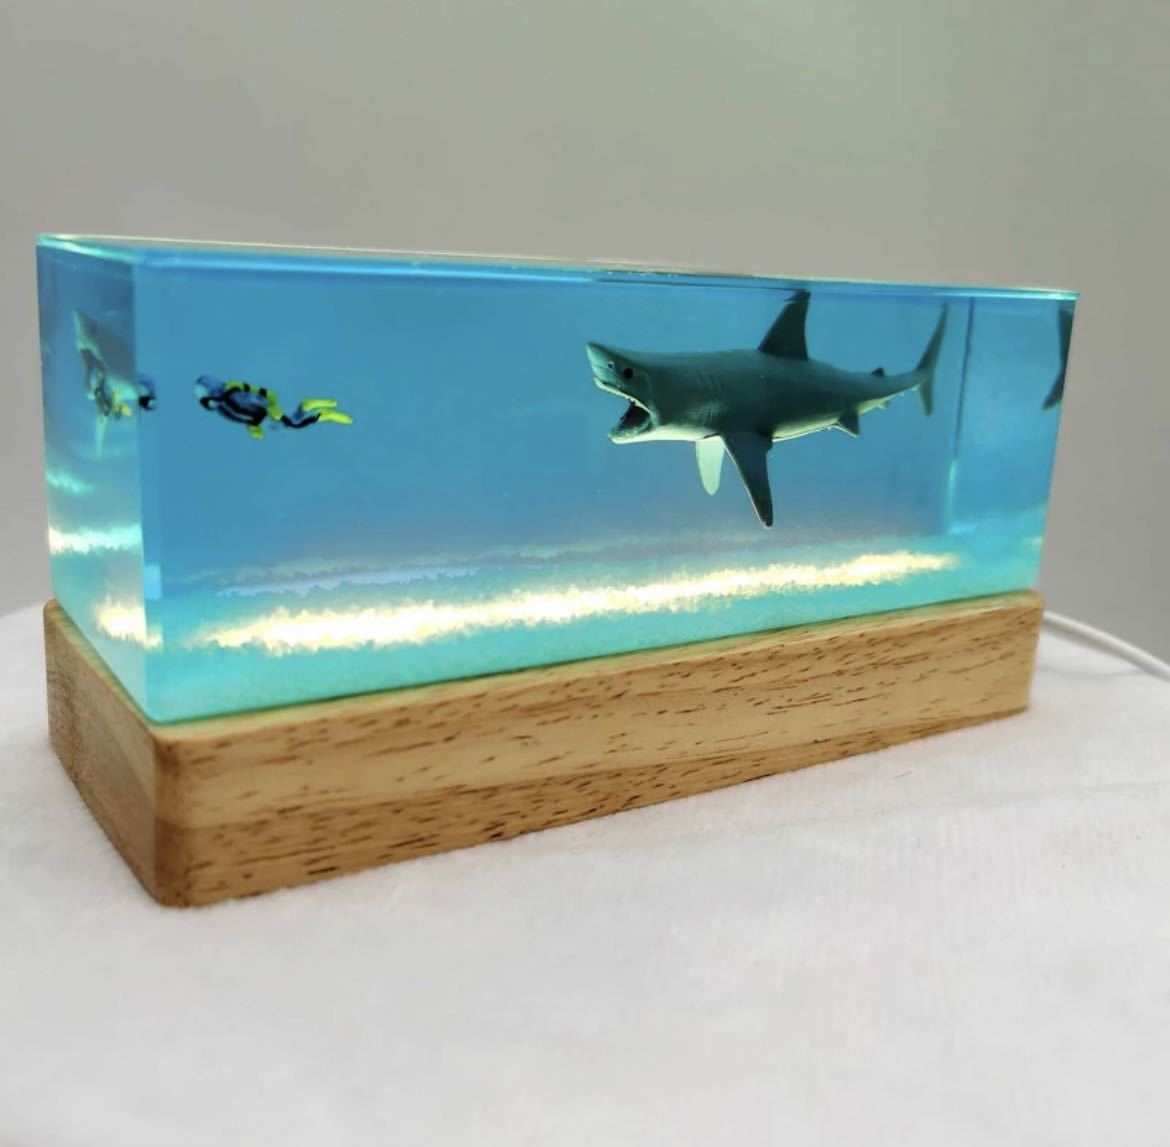 手工鲨鱼潜水员办公桌人偶室内装饰物品雕像艺术配件树脂海洋照明创意鲨鱼 626, 手工作品, 内部的, 杂货, 装饰品, 目的